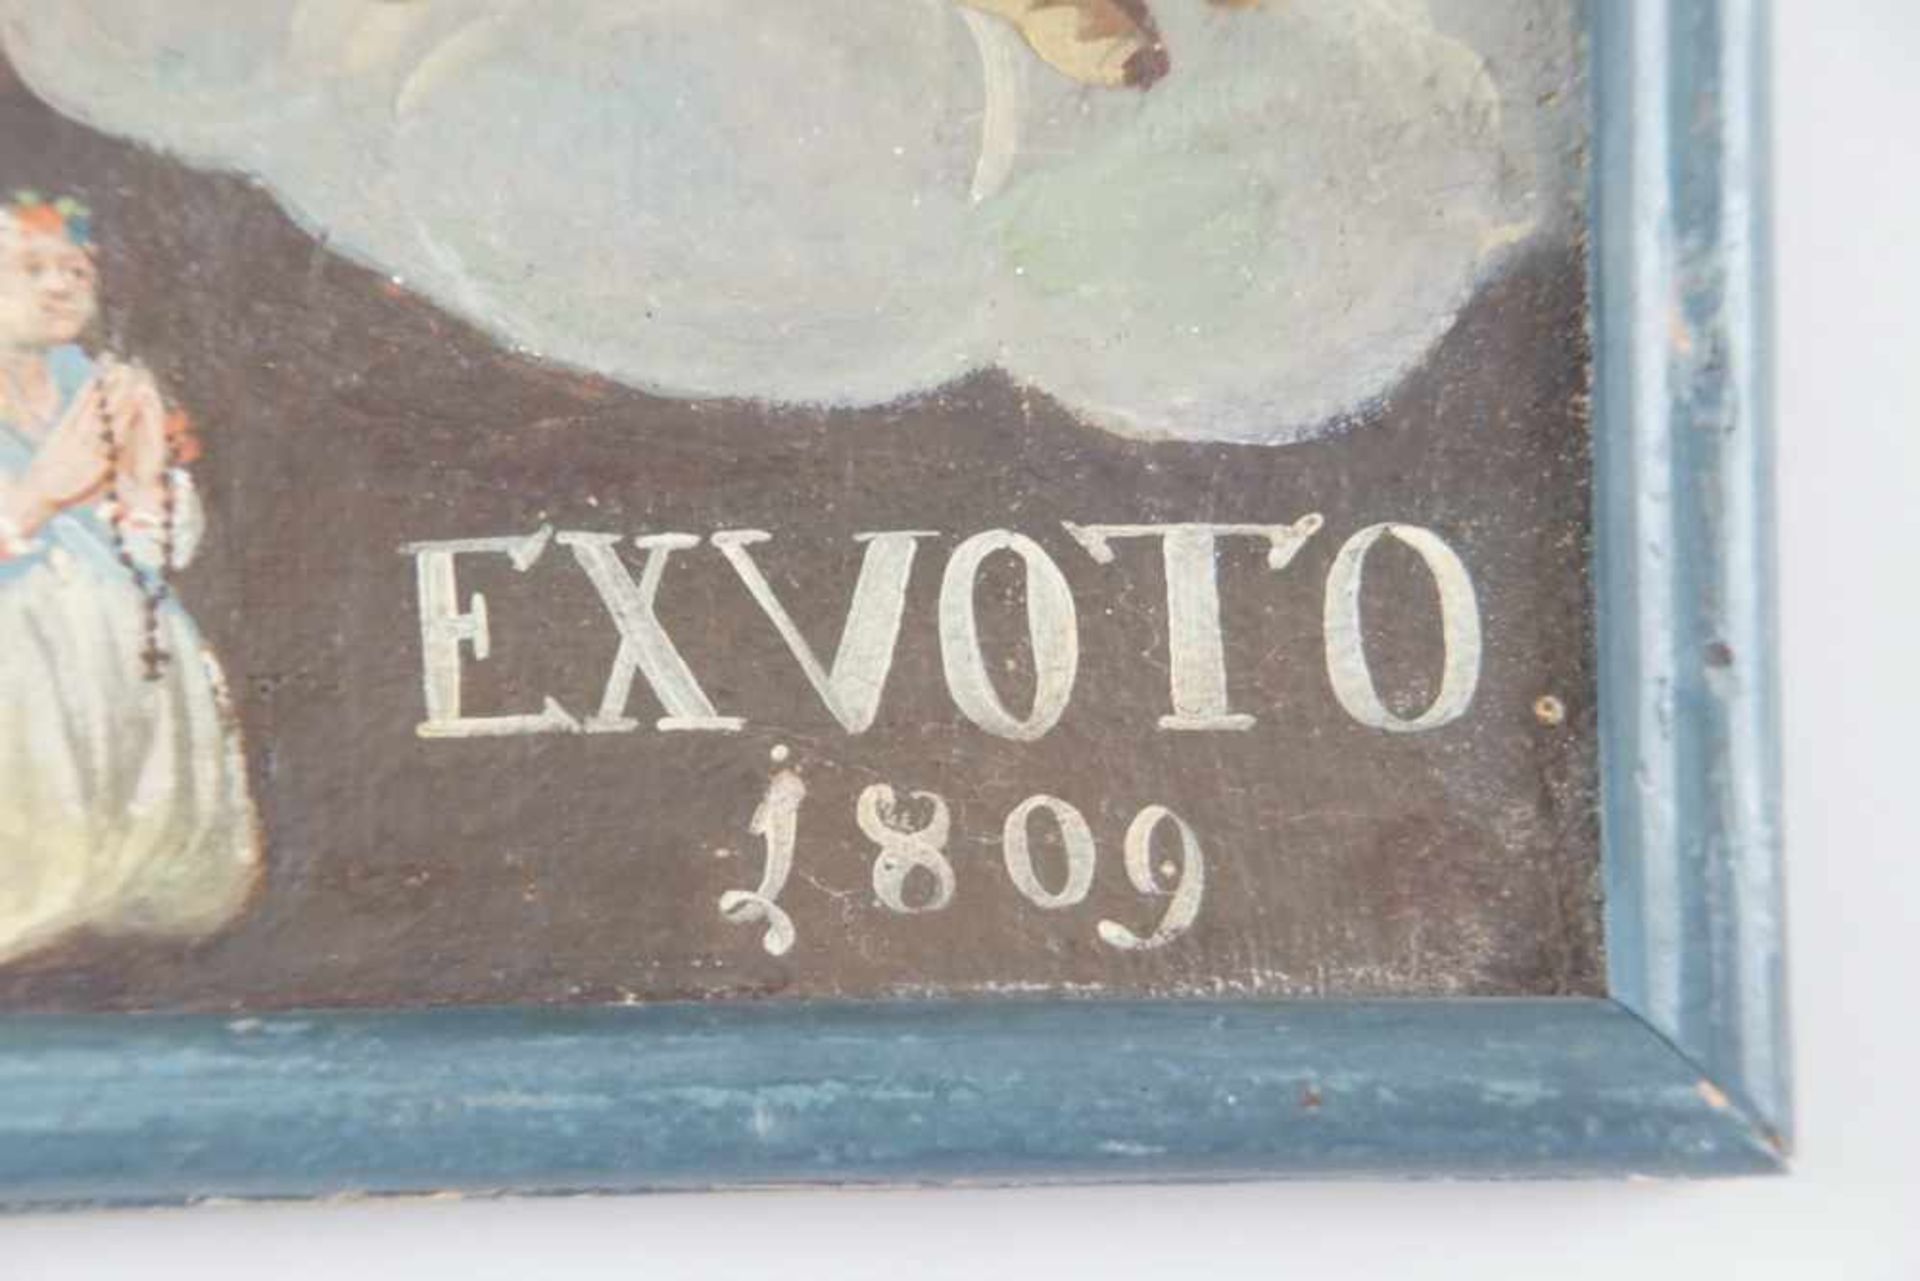 Votivtafel, Öl auf Leinwand, doubliert, gerahmt, datiert 1809, 34x31cm- - -24.00 % buyer's premium - Bild 4 aus 5